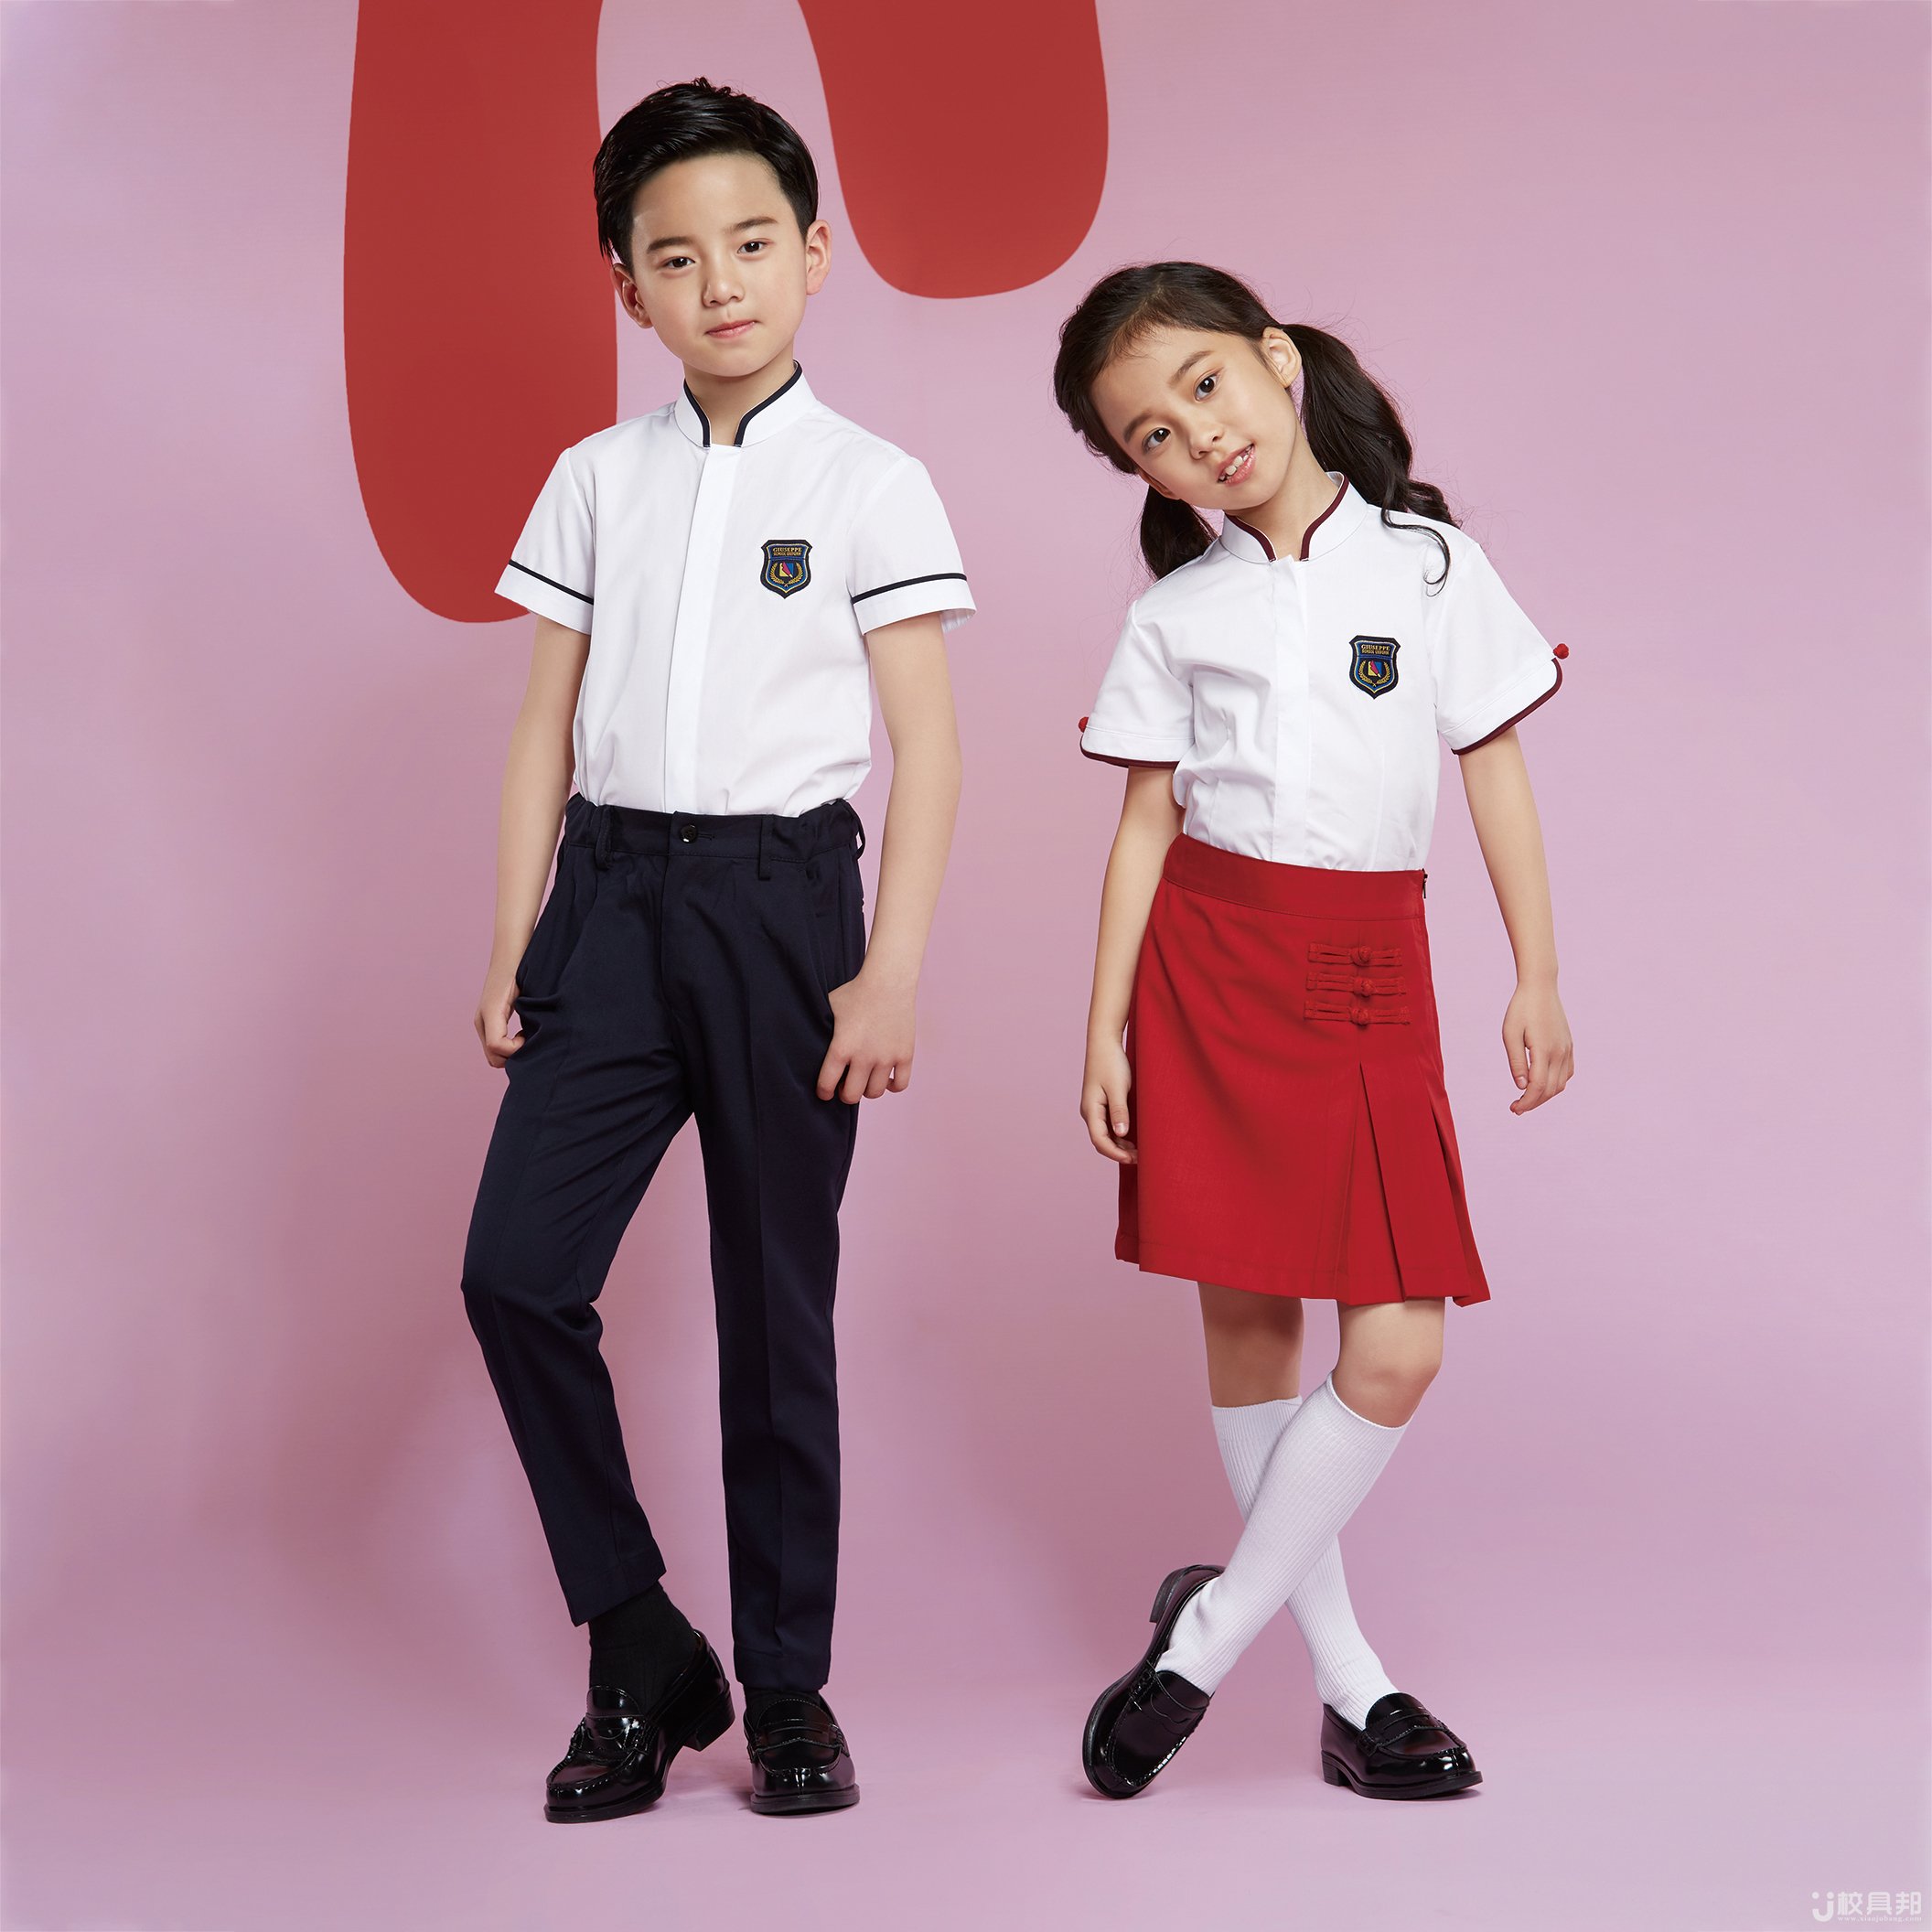 校服风格:日韩风校服校服季节:夏季校服年龄阶段:小学校服商品详情